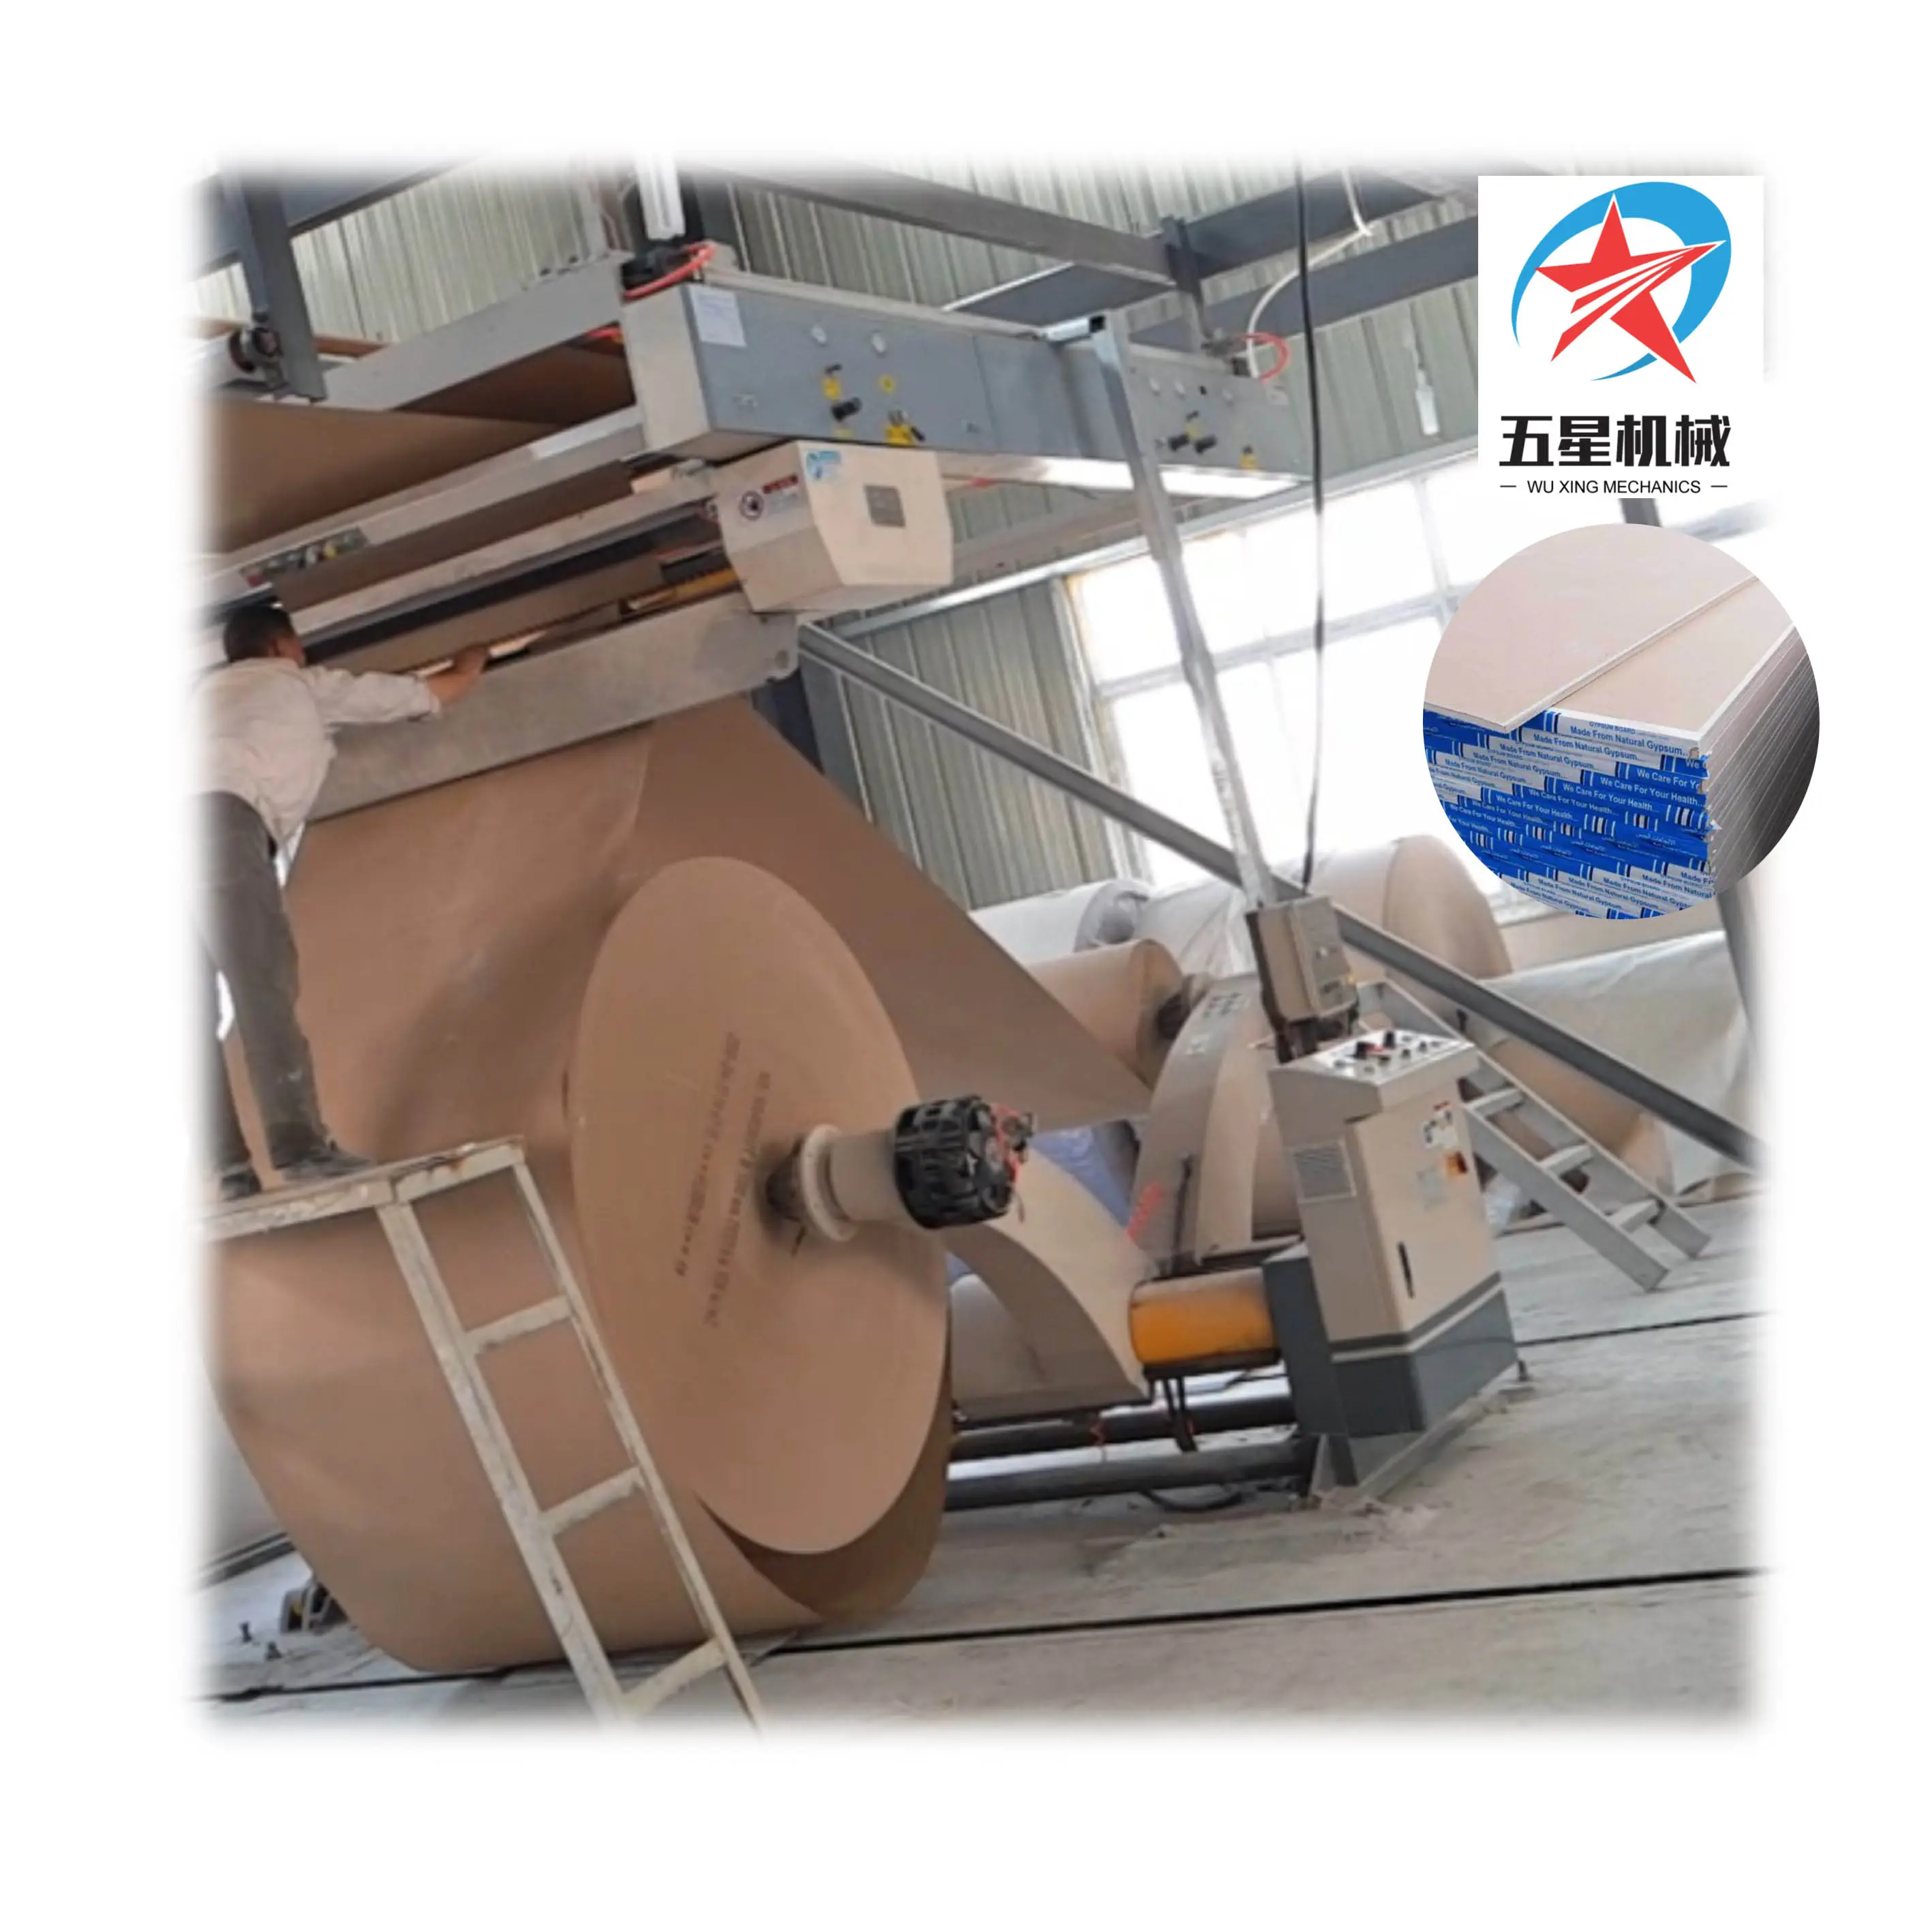 Impianto di produzione di cartongesso in cartongesso rivestito in carta/linea di produzione di cartongesso/macchina per cartongesso in materiale da costruzione